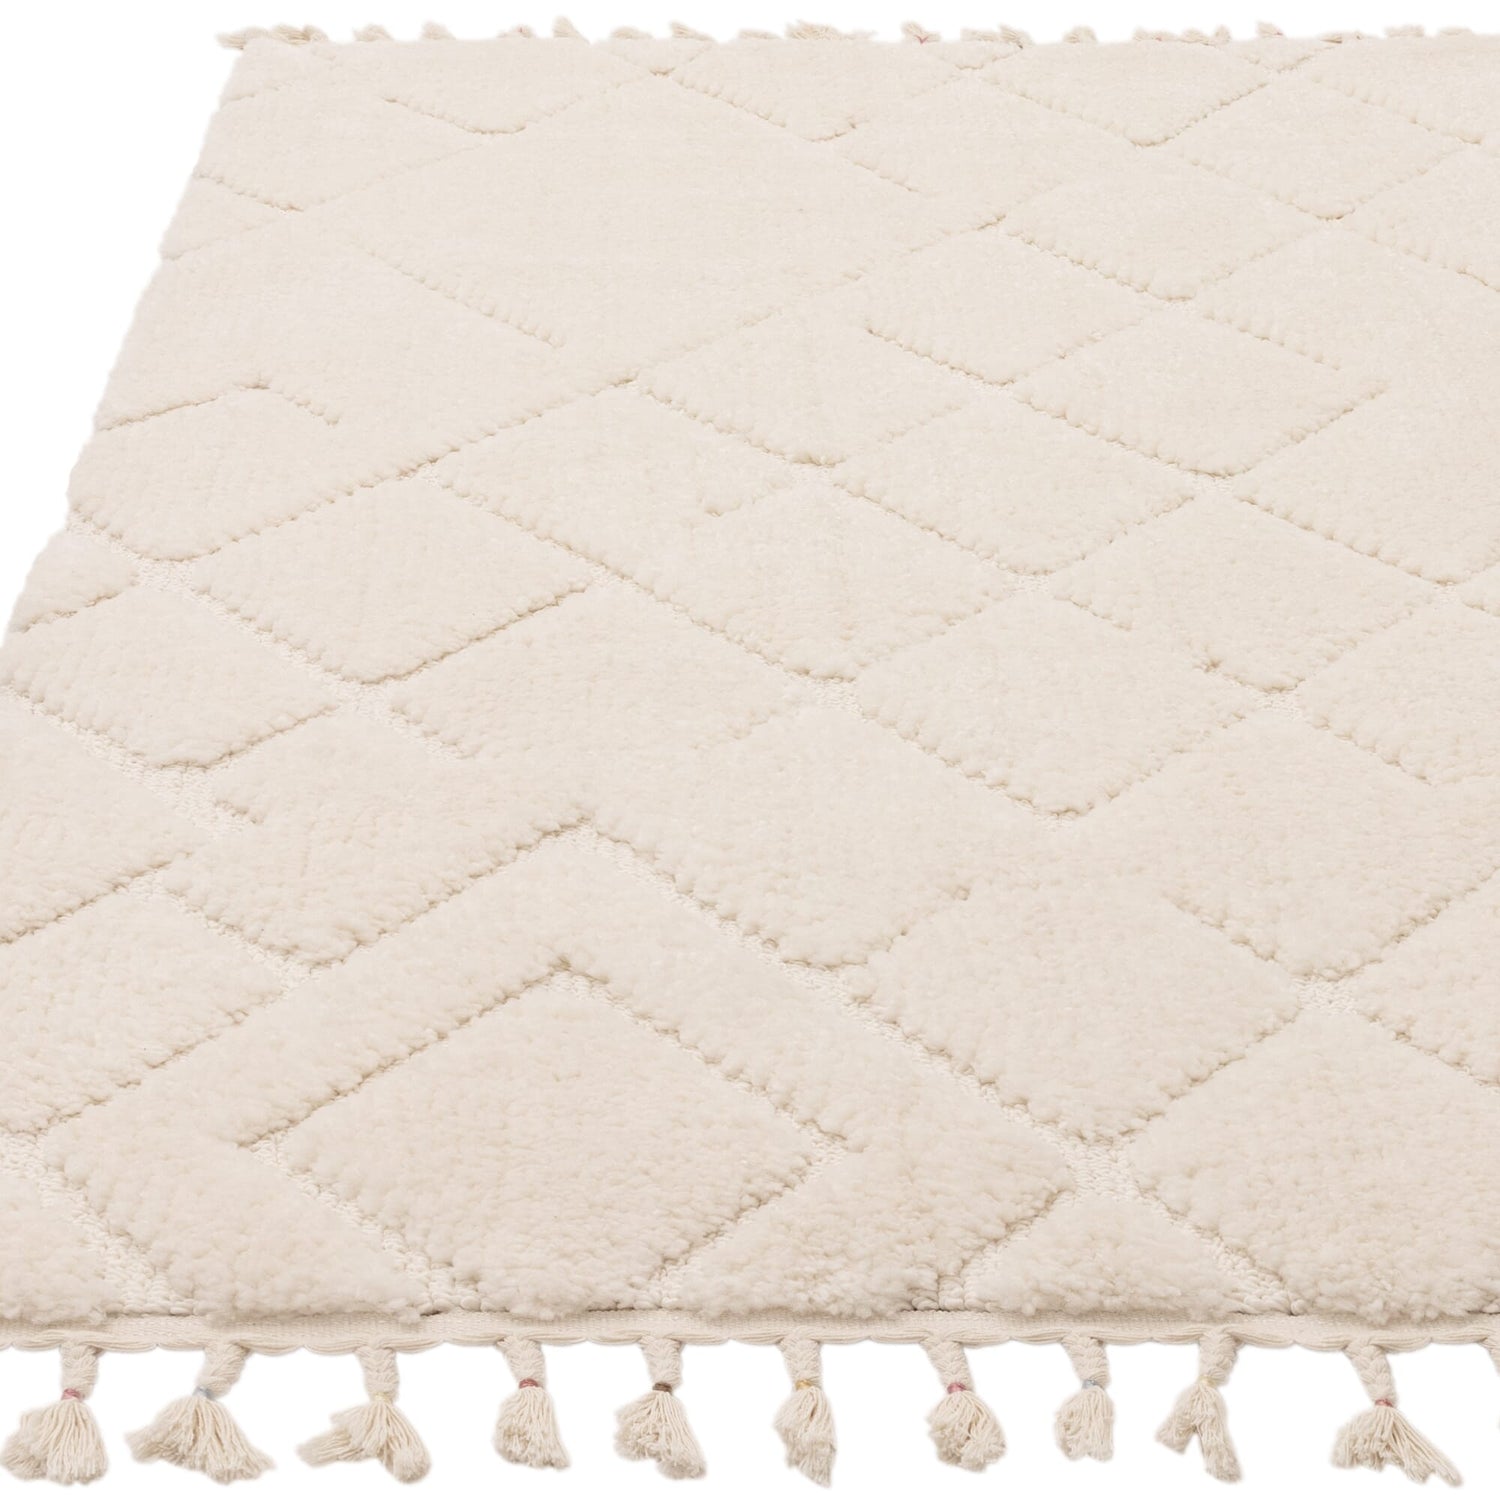  Asiatic Carpets-Asiatic Carpets Ariana Vanilla Rug-Cream, White 189 